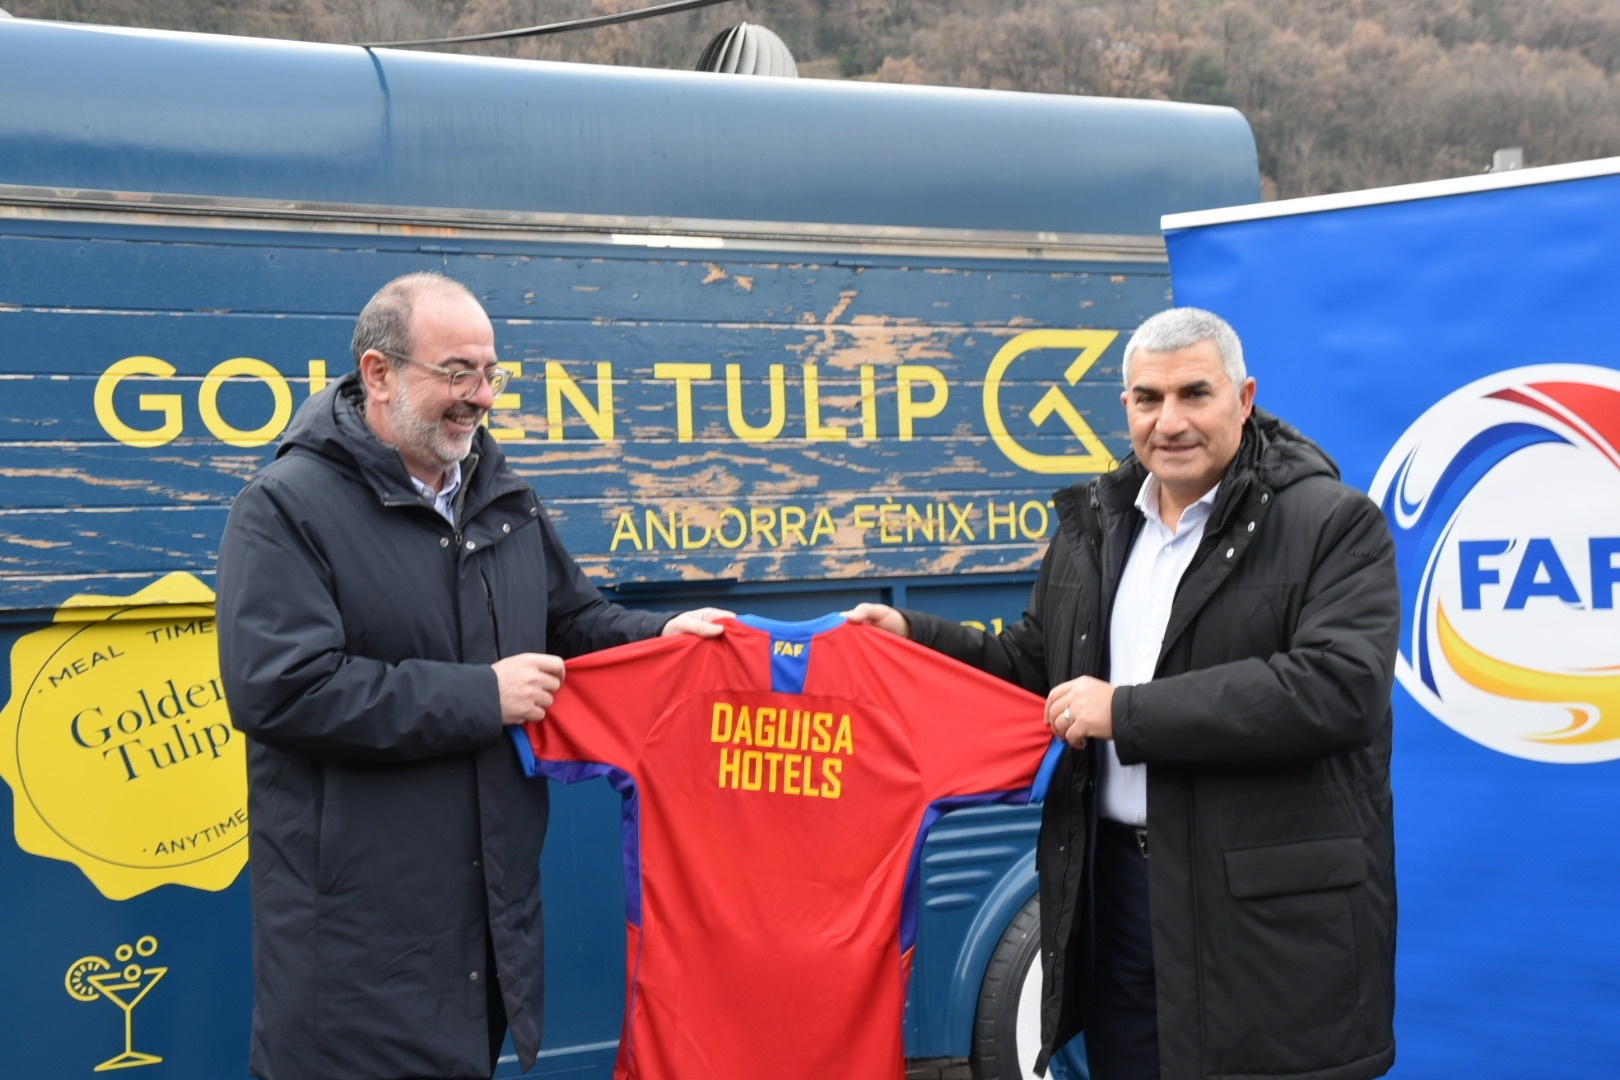 Daguisa Hotels se convierte en nuevo patrocinador oficial de la Federación Andorrana de Fútbol